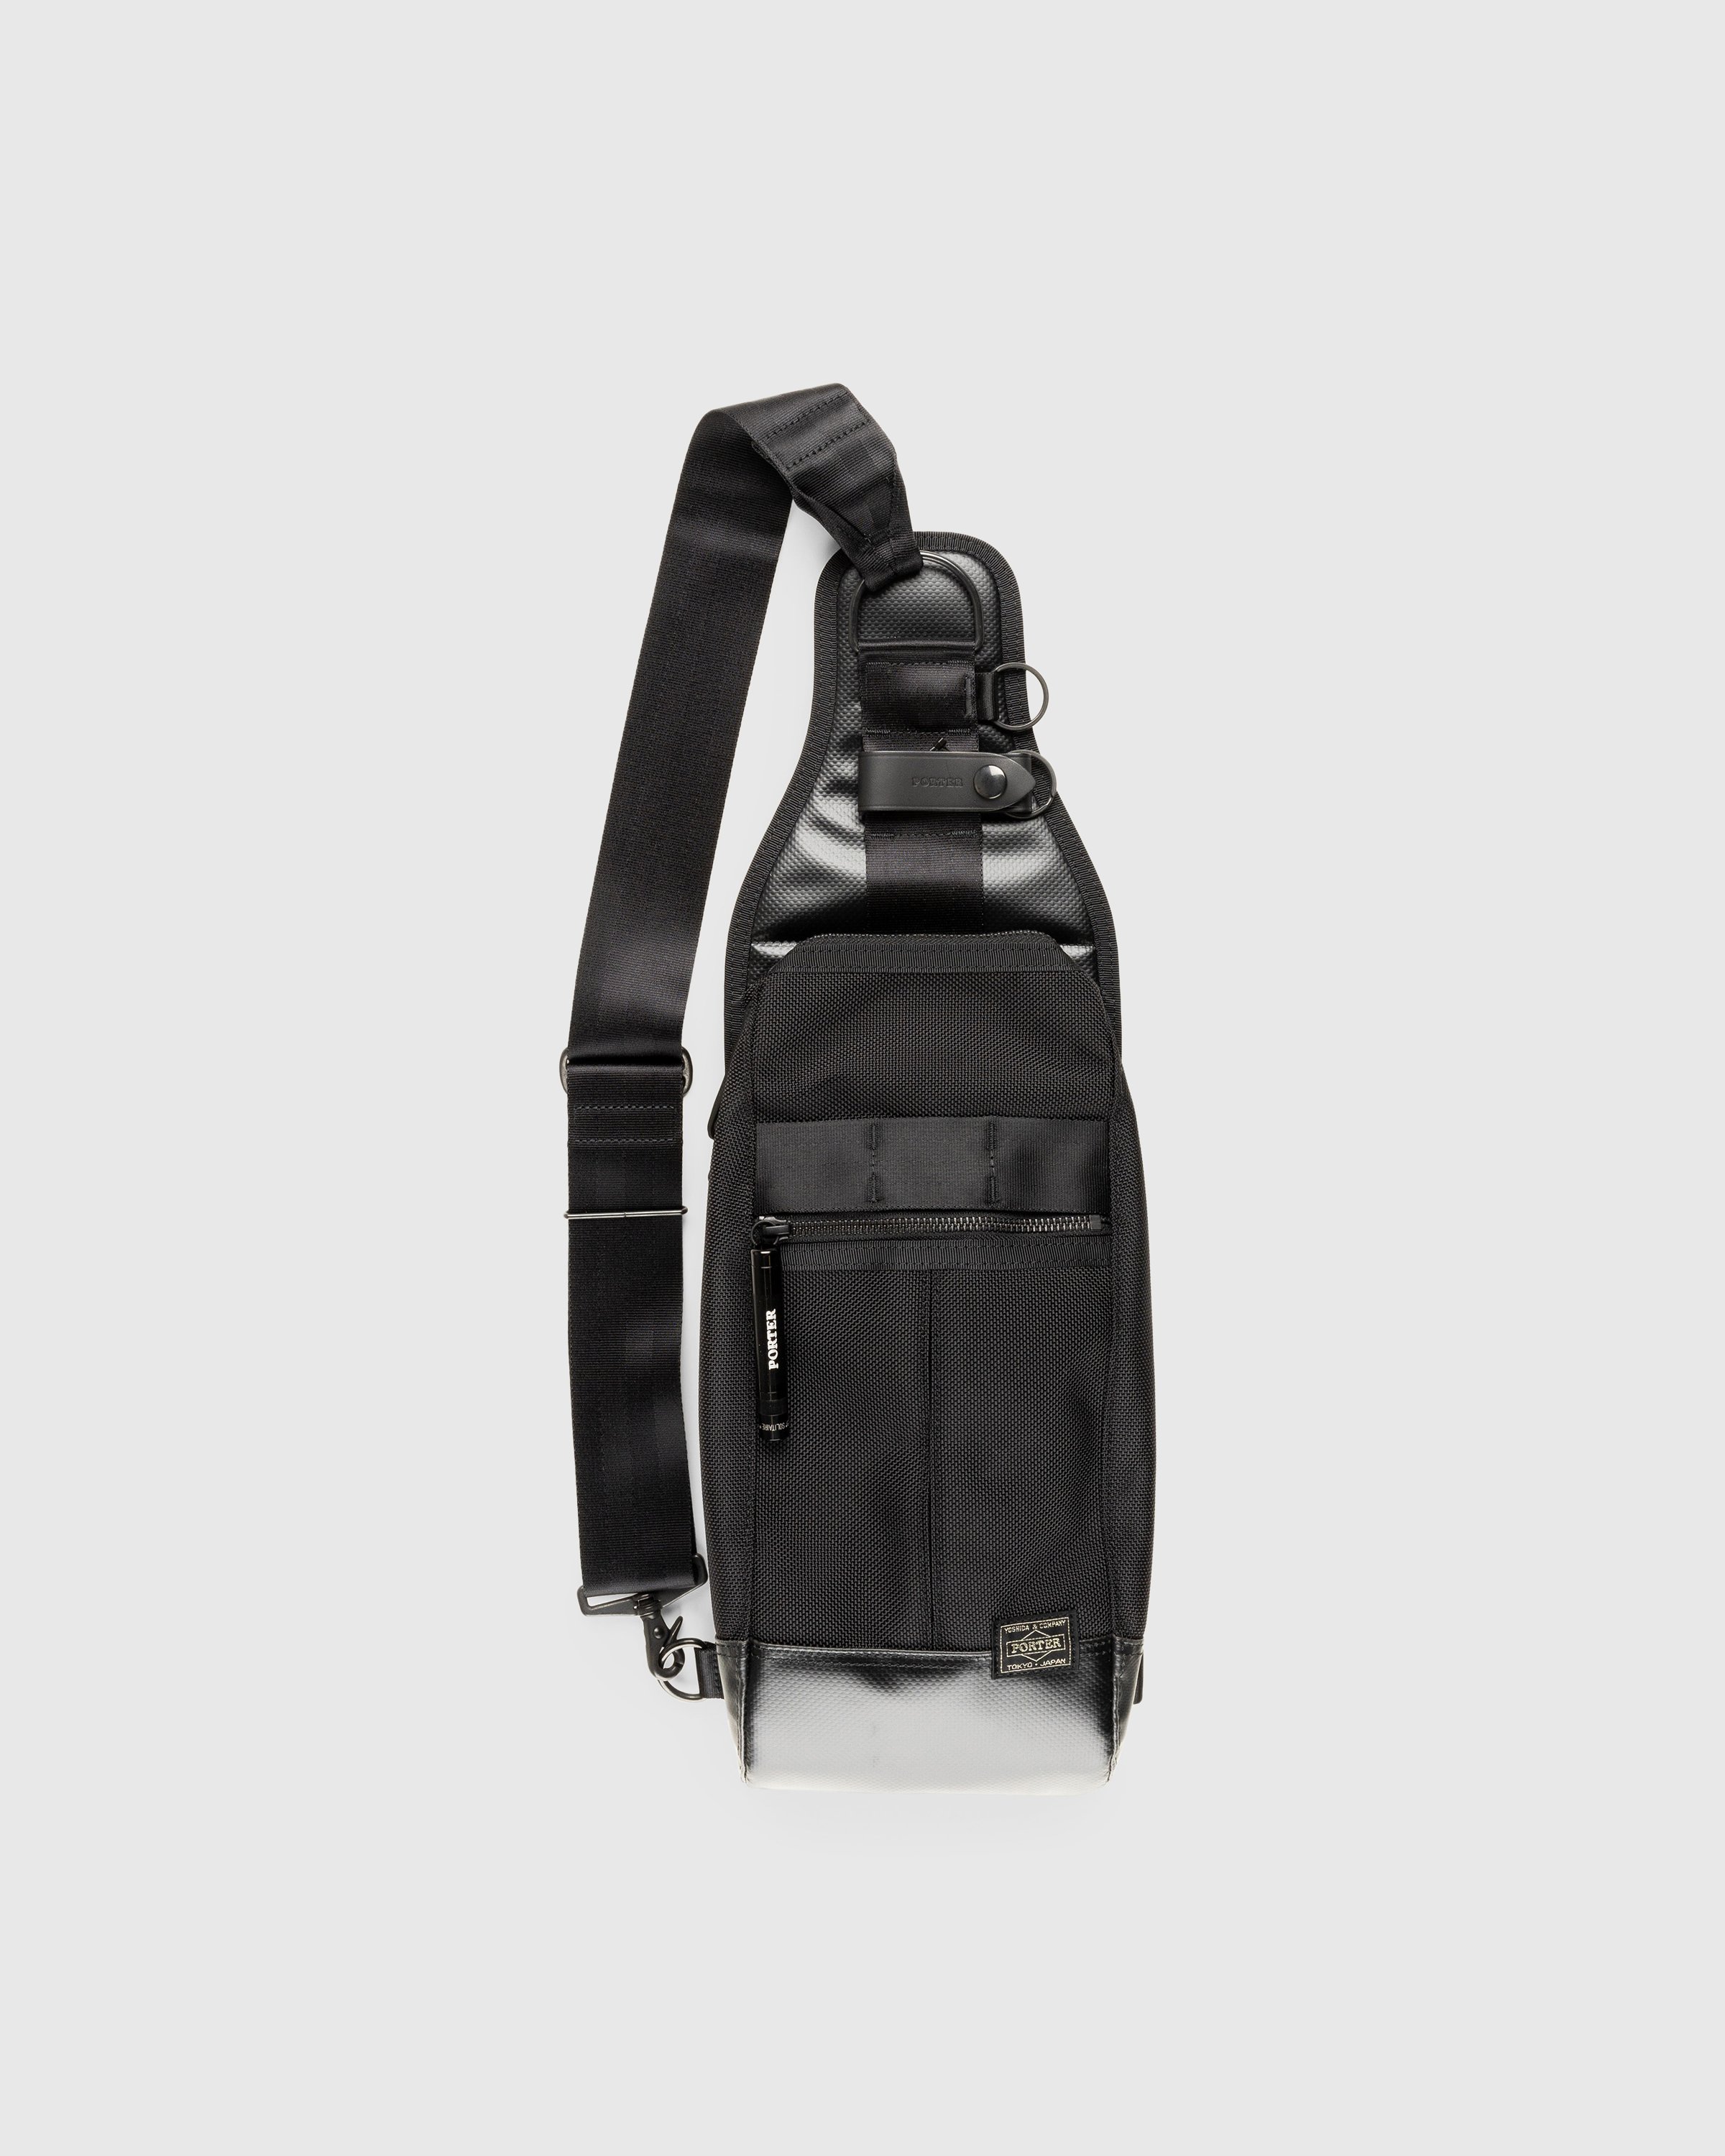 Porter-Yoshida & Co. - Heat Sling Shoulder Bag Black - Accessories - Black - Image 1